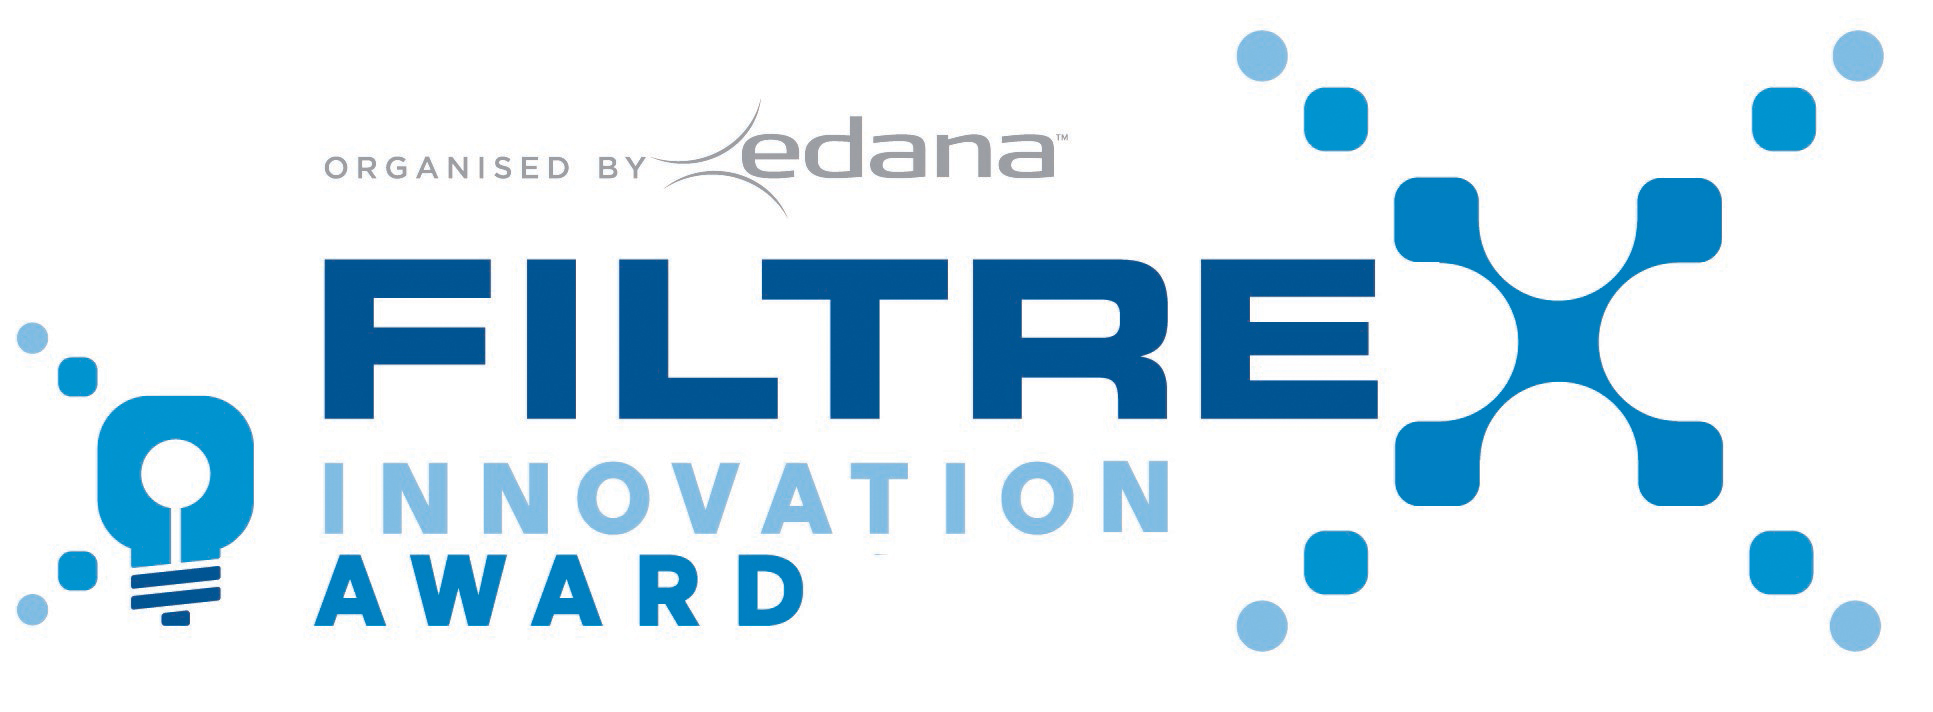 FILTREX Innovation Award logo